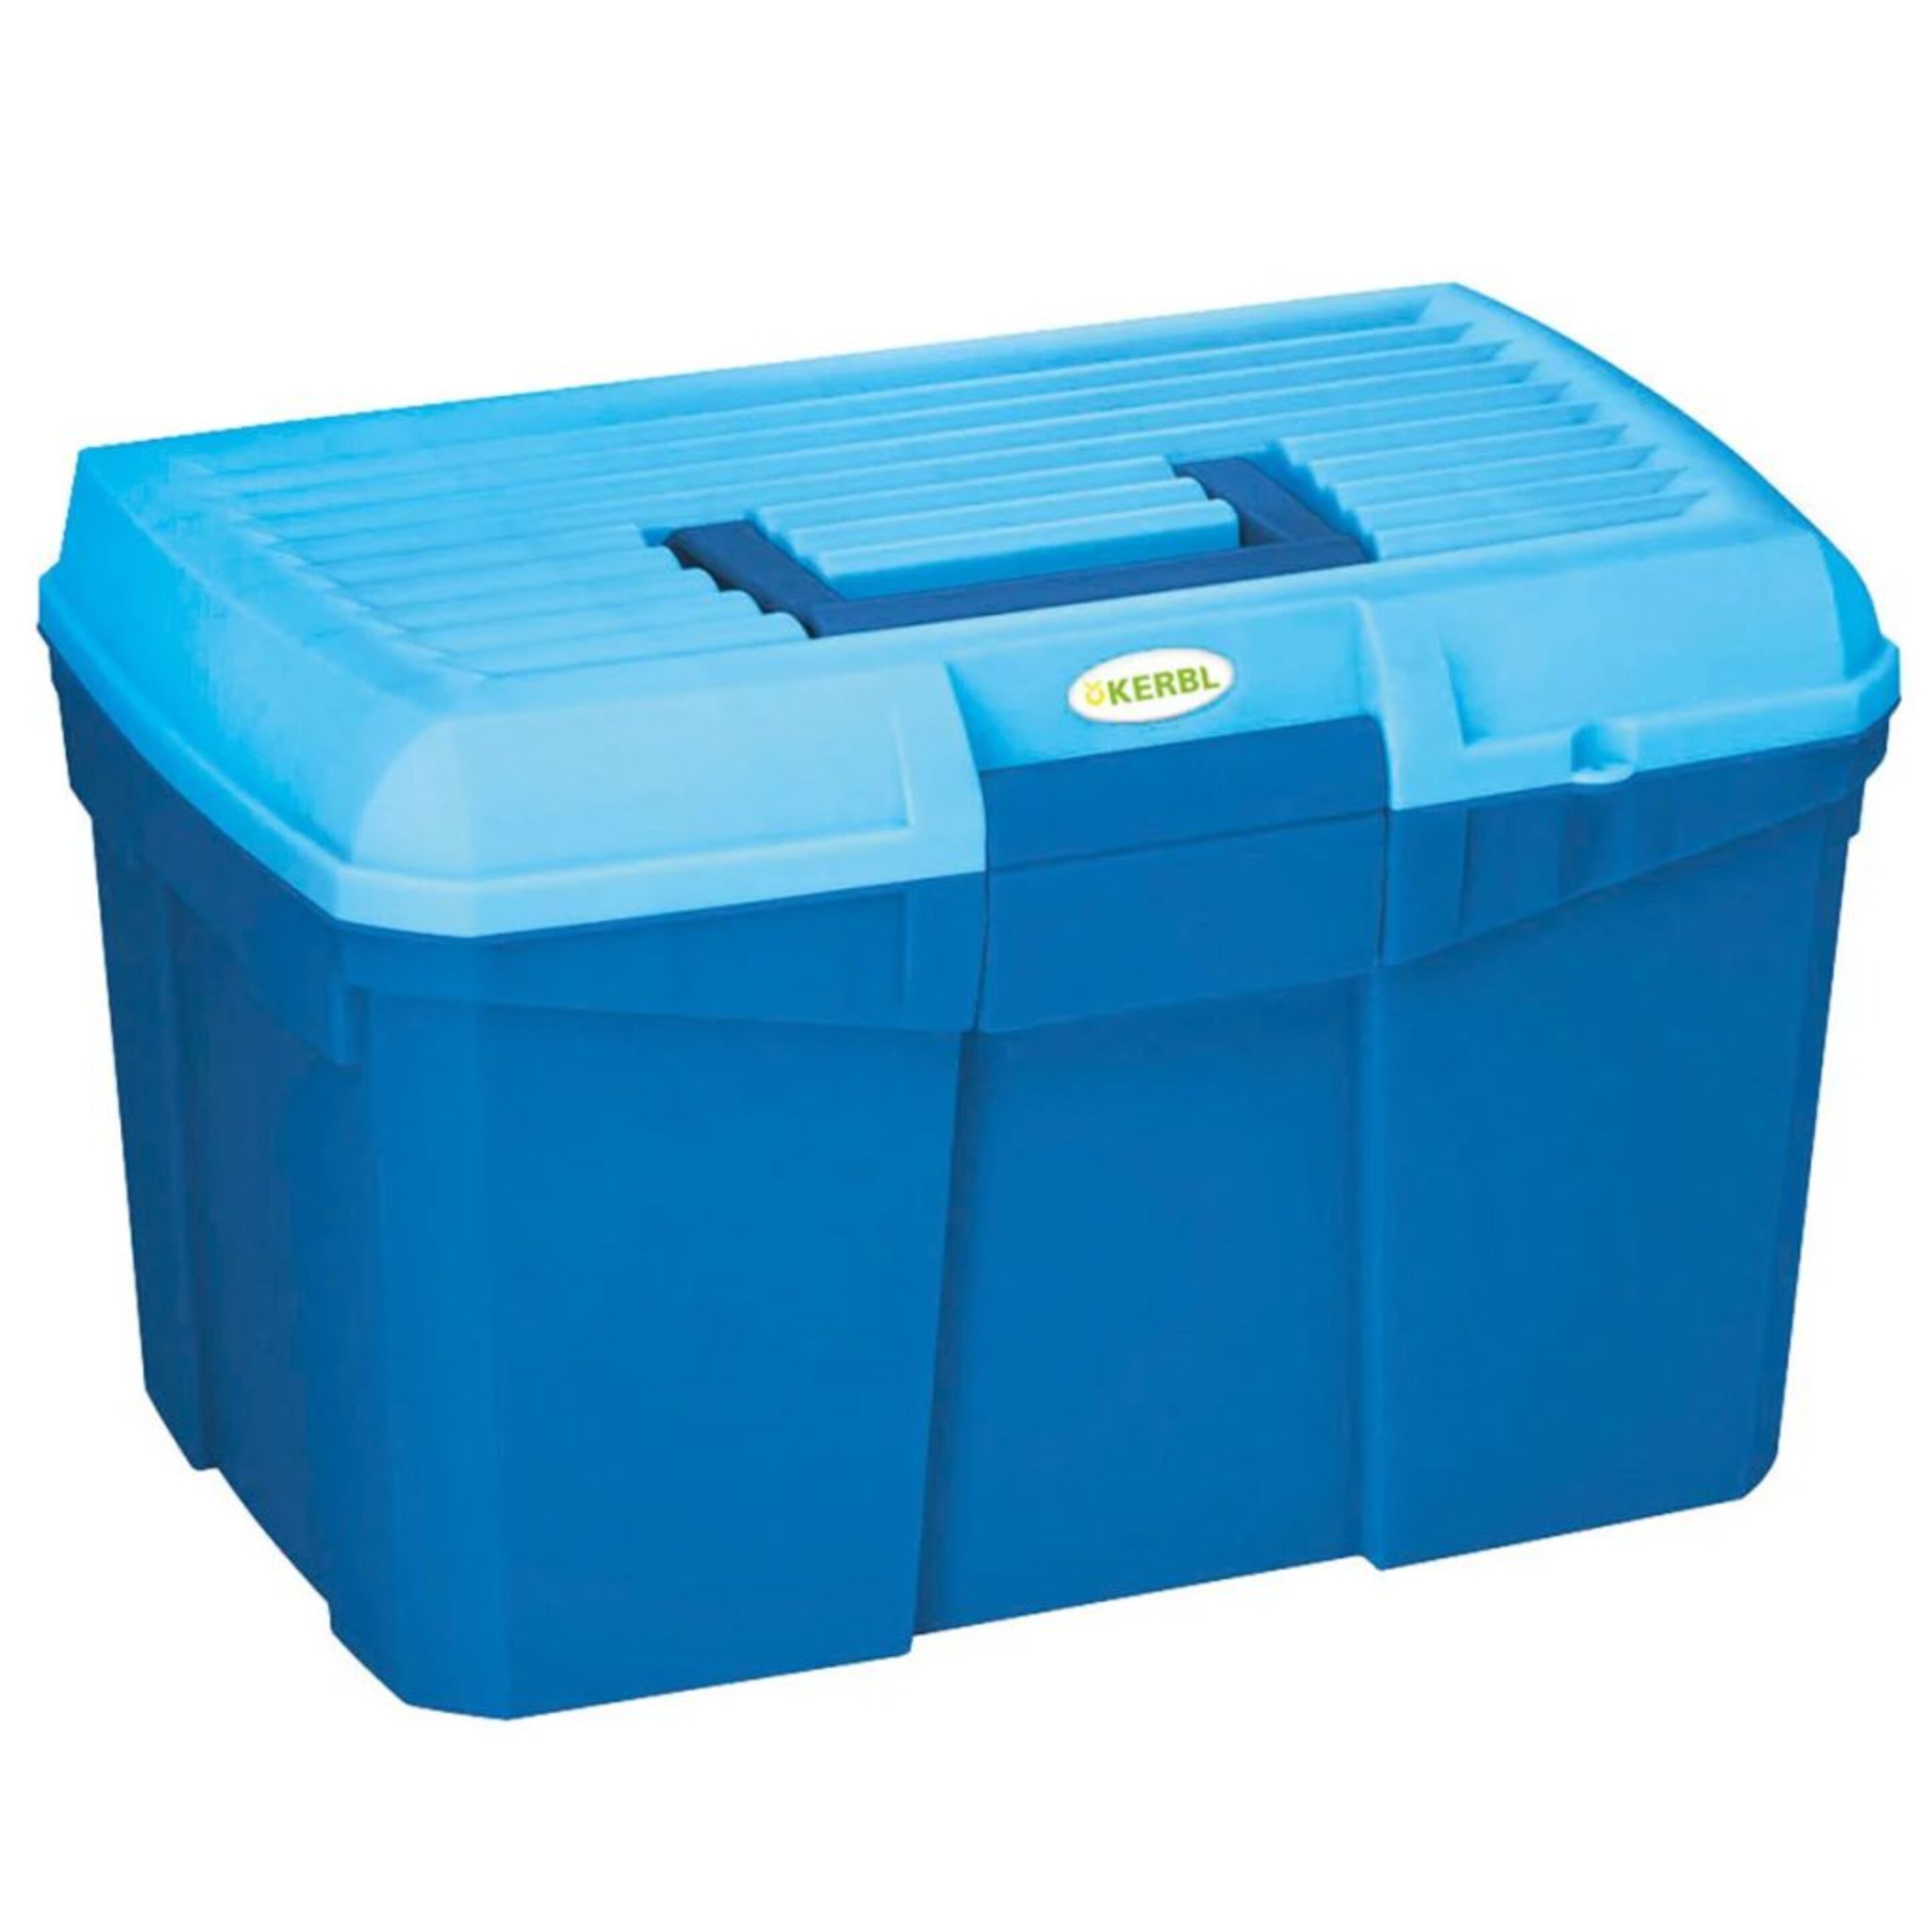 Kerbl Caja De Aseo Para Caballos Siena Azul Marino 321757 - azul - 